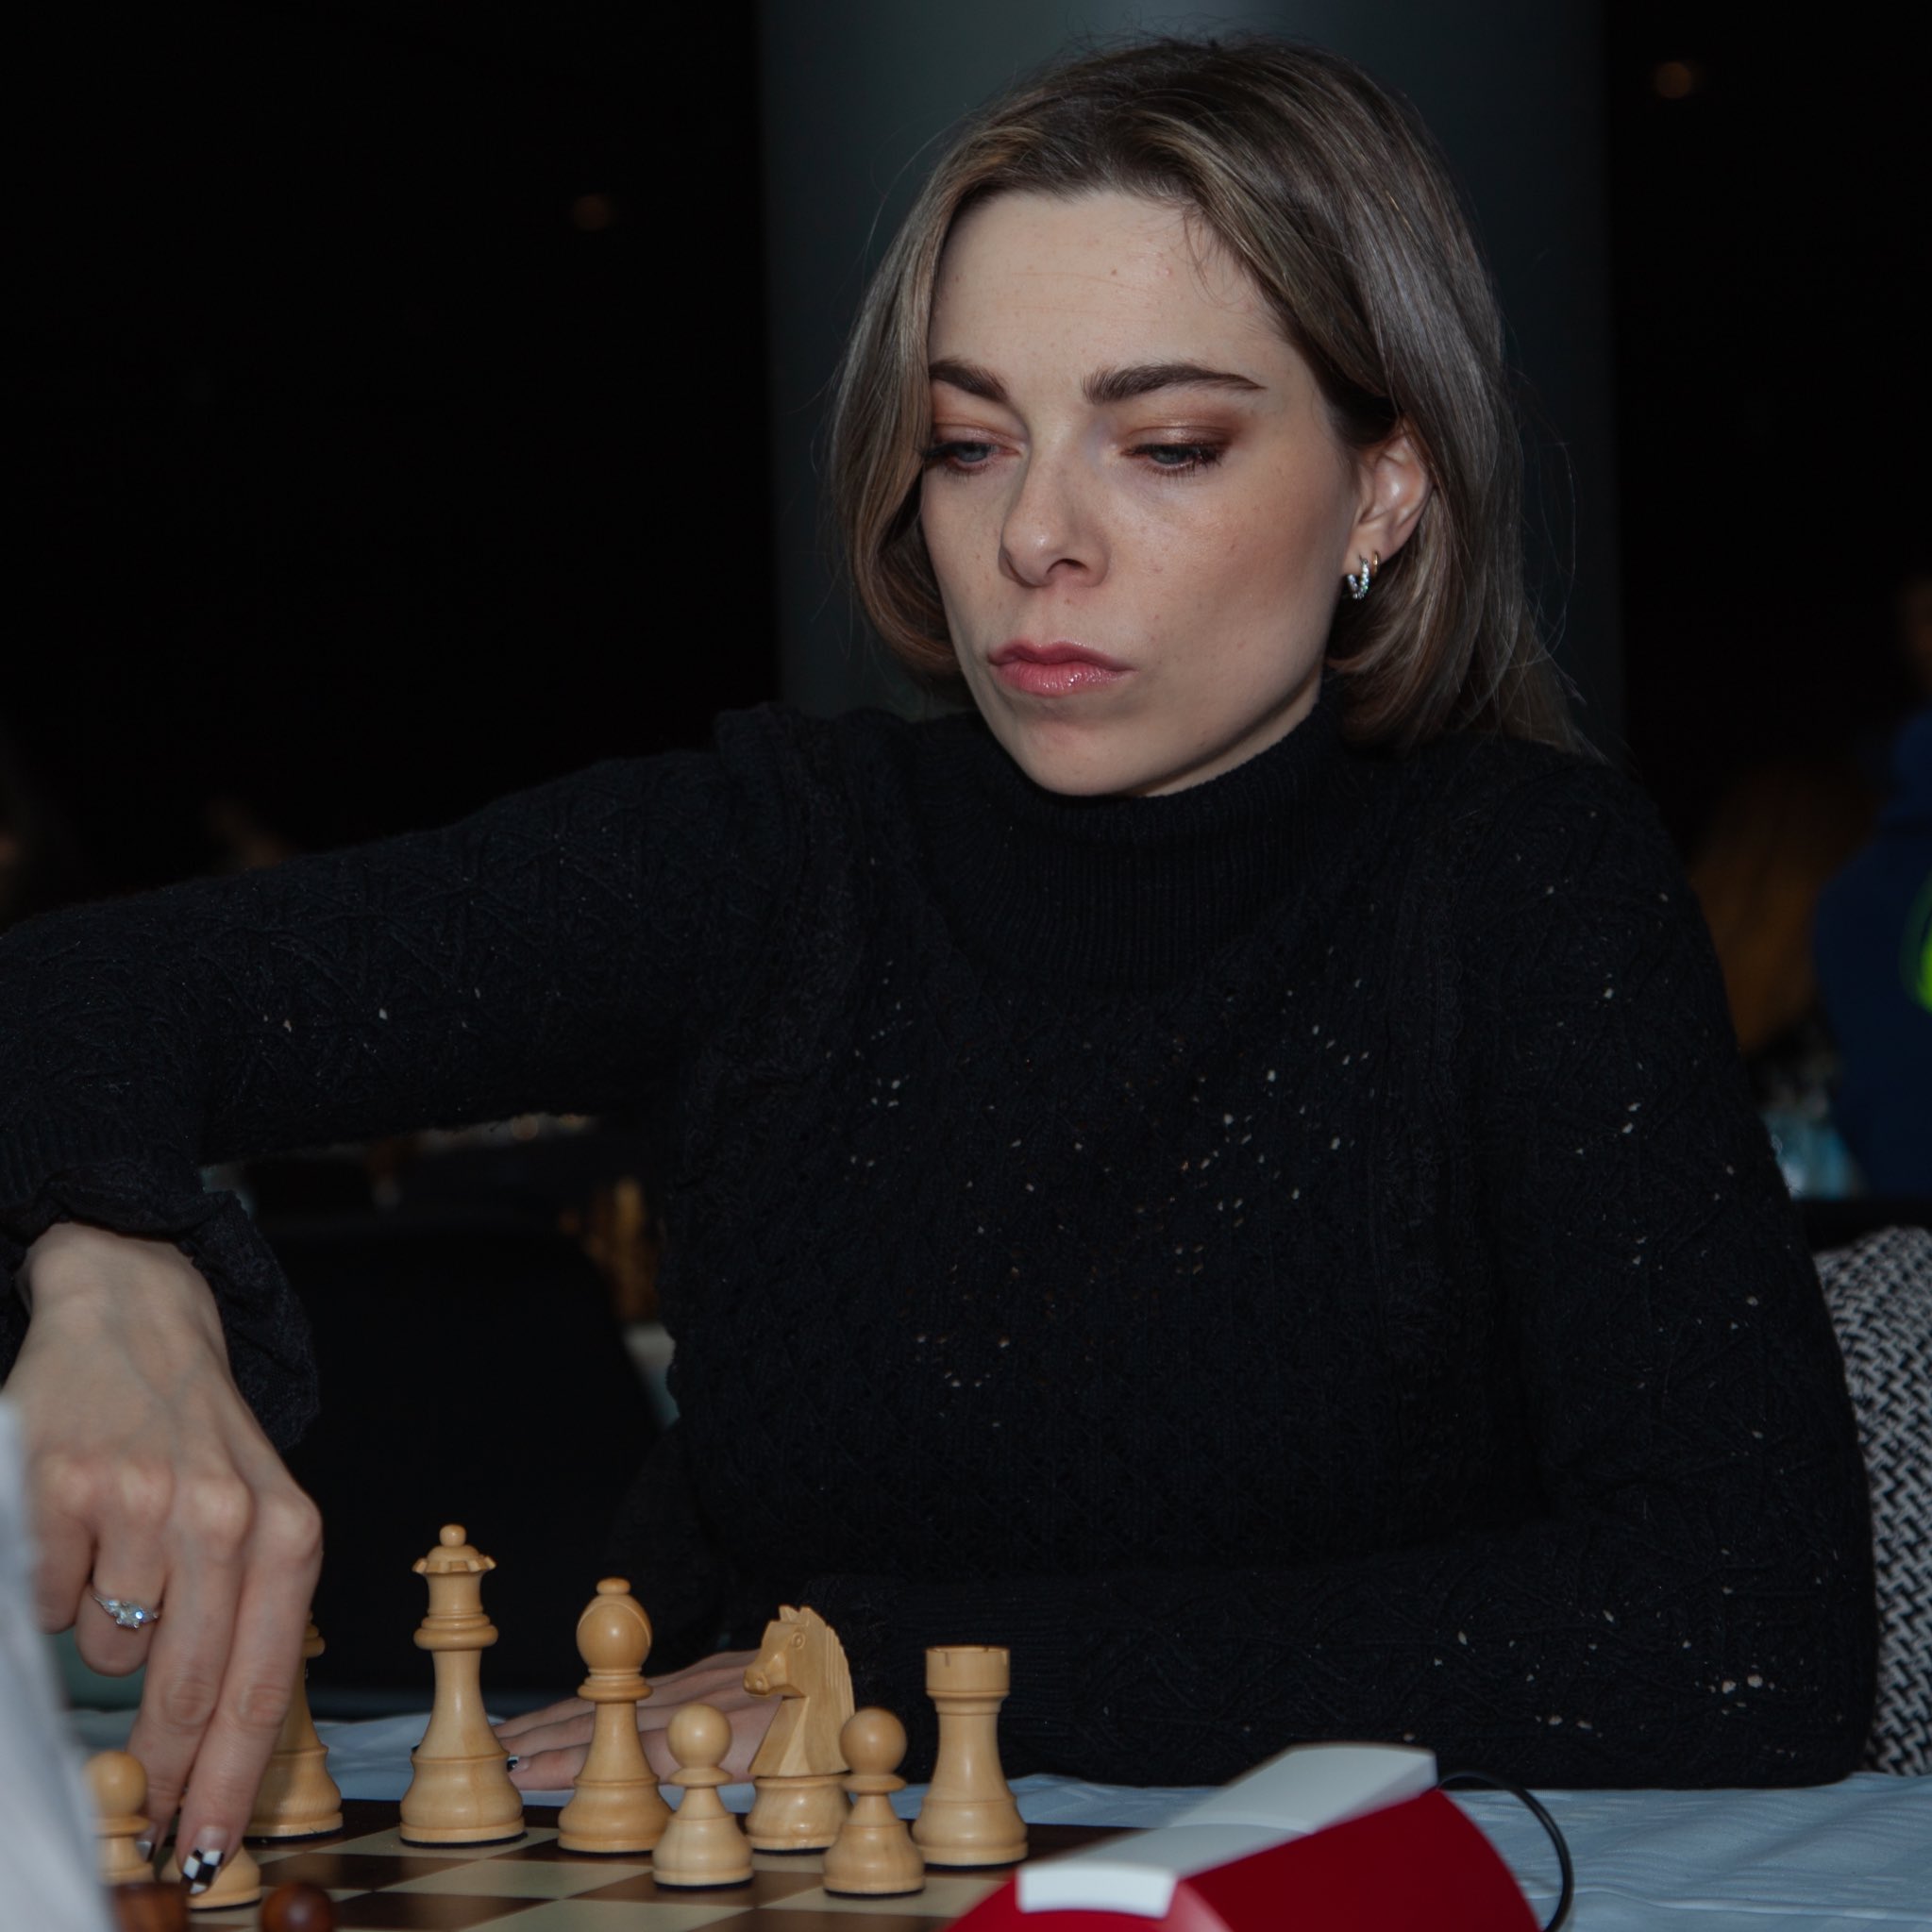 Dina Belenkaya on X: This week I only play with girls ♟️ https